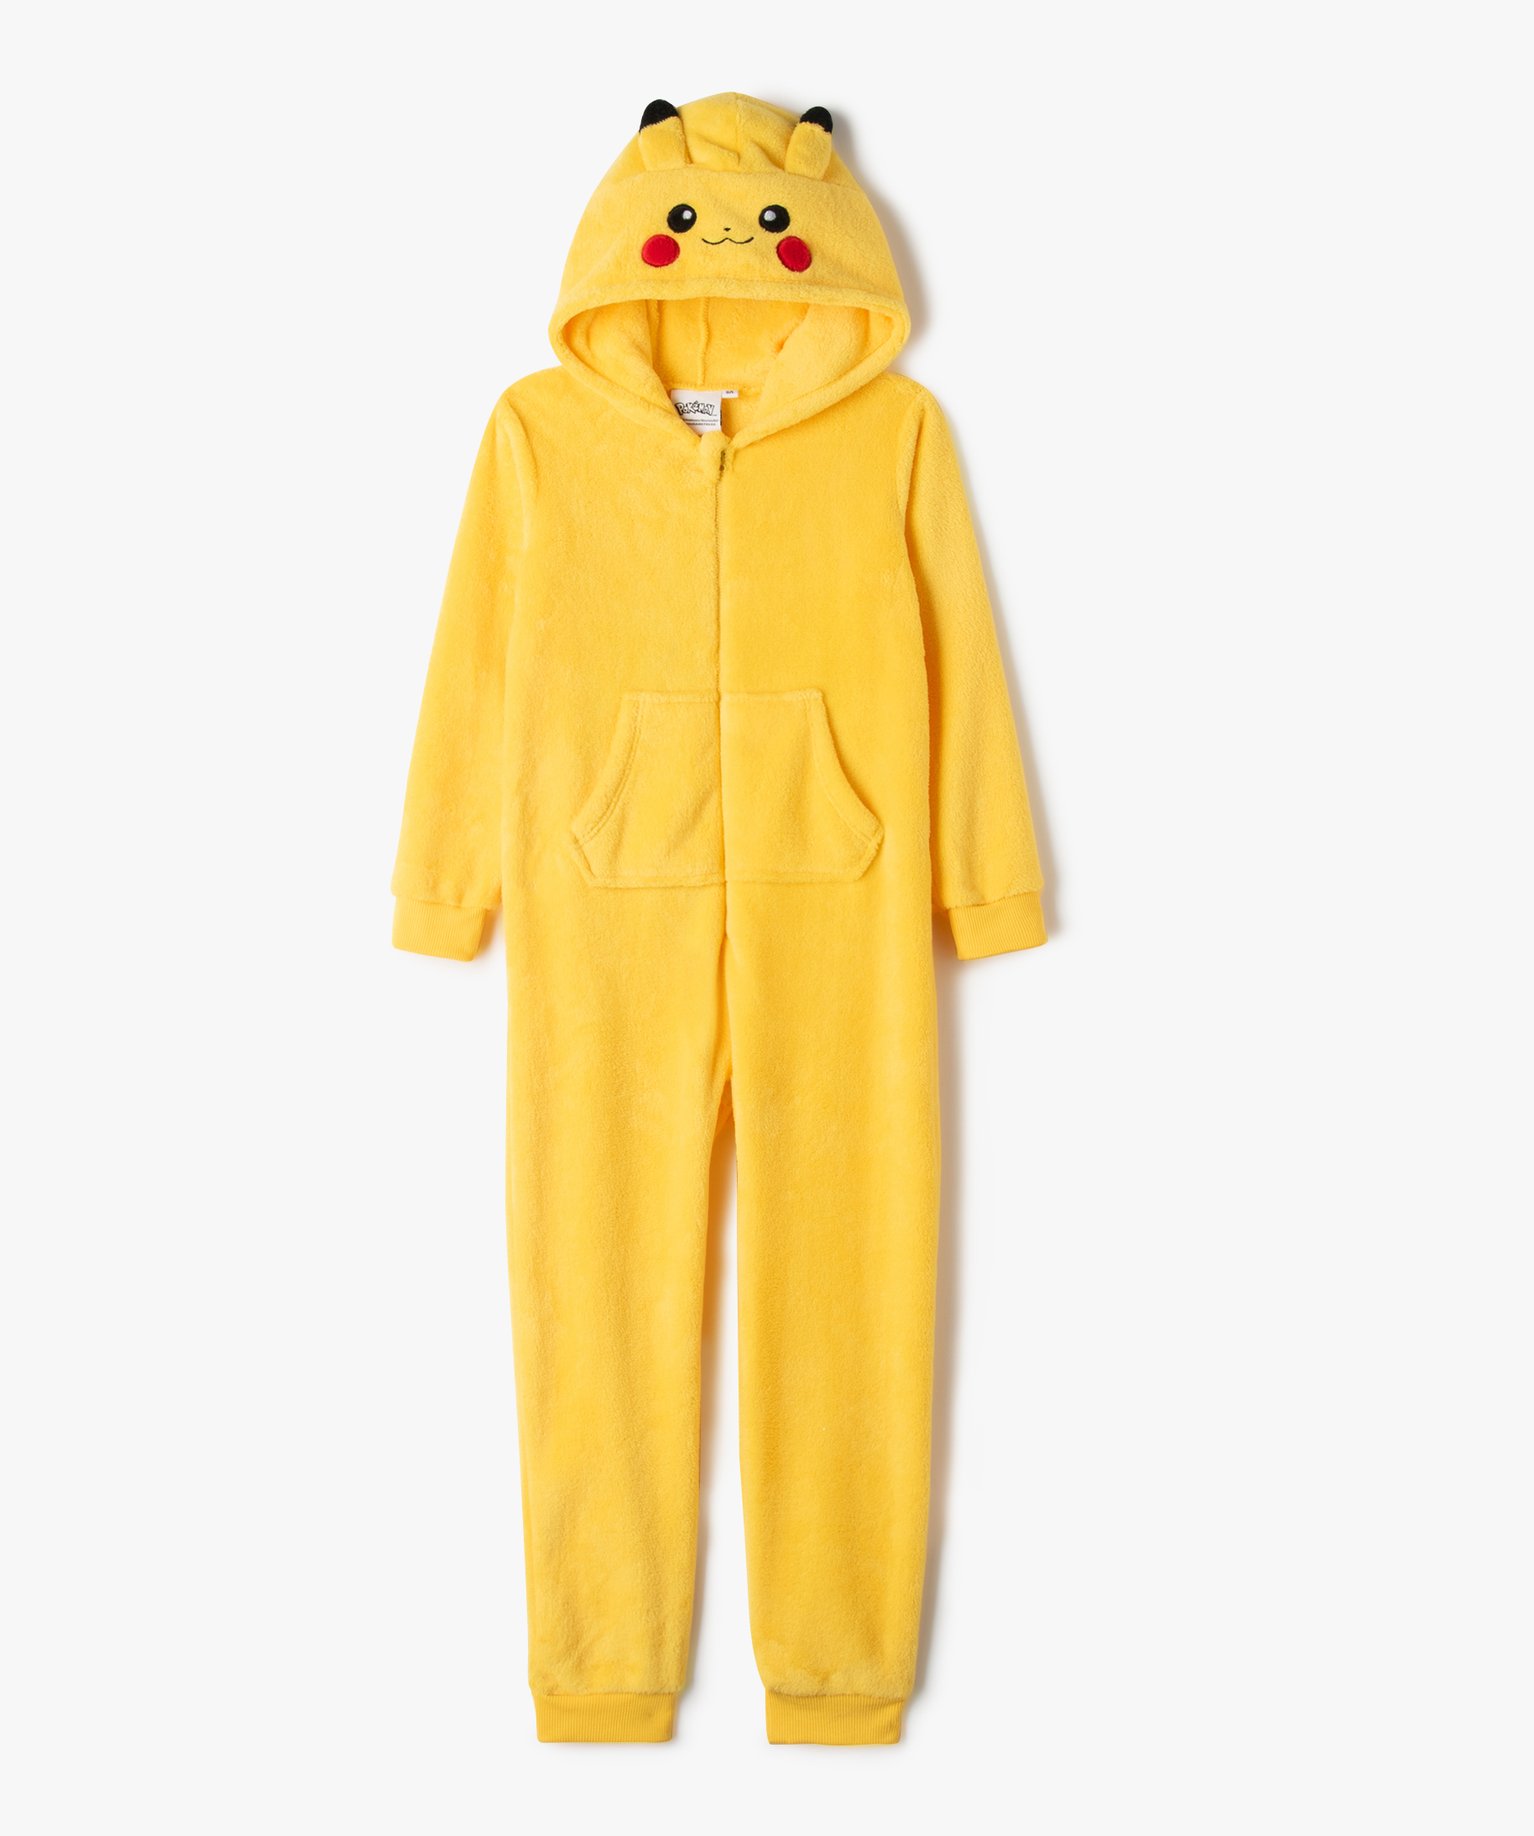 Combinaison enfant unisexe de Pikachu 